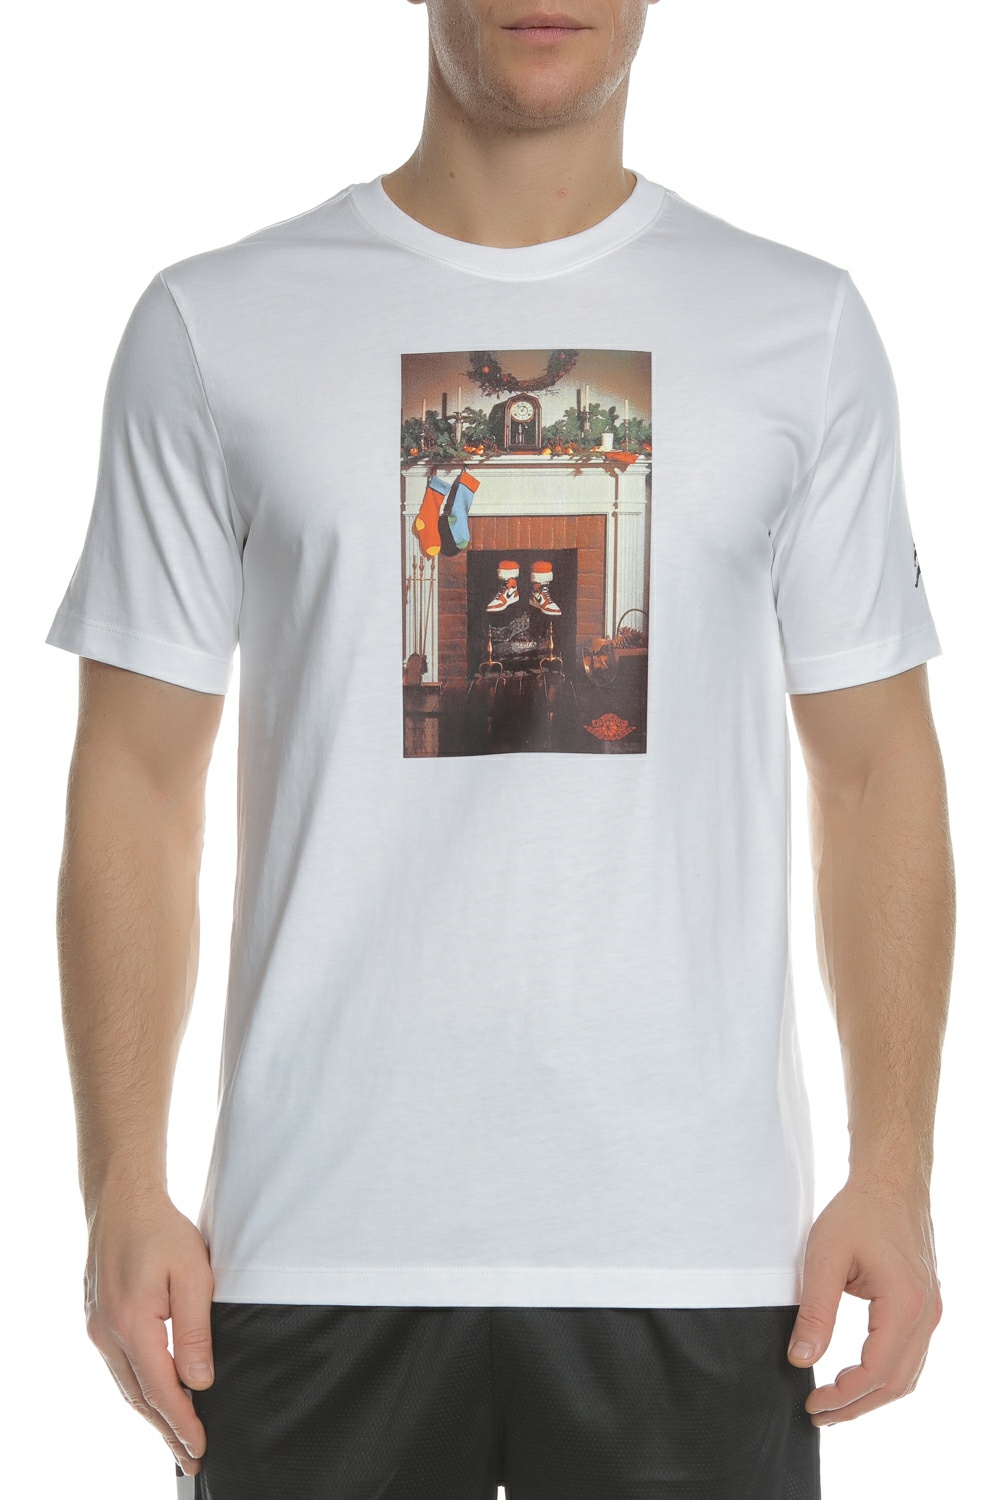 Ανδρικά/Ρούχα/Αθλητικά/T-shirt NIKE - Ανδρικό αθλητικό t-shirt NIKE AIR TEE λευκό